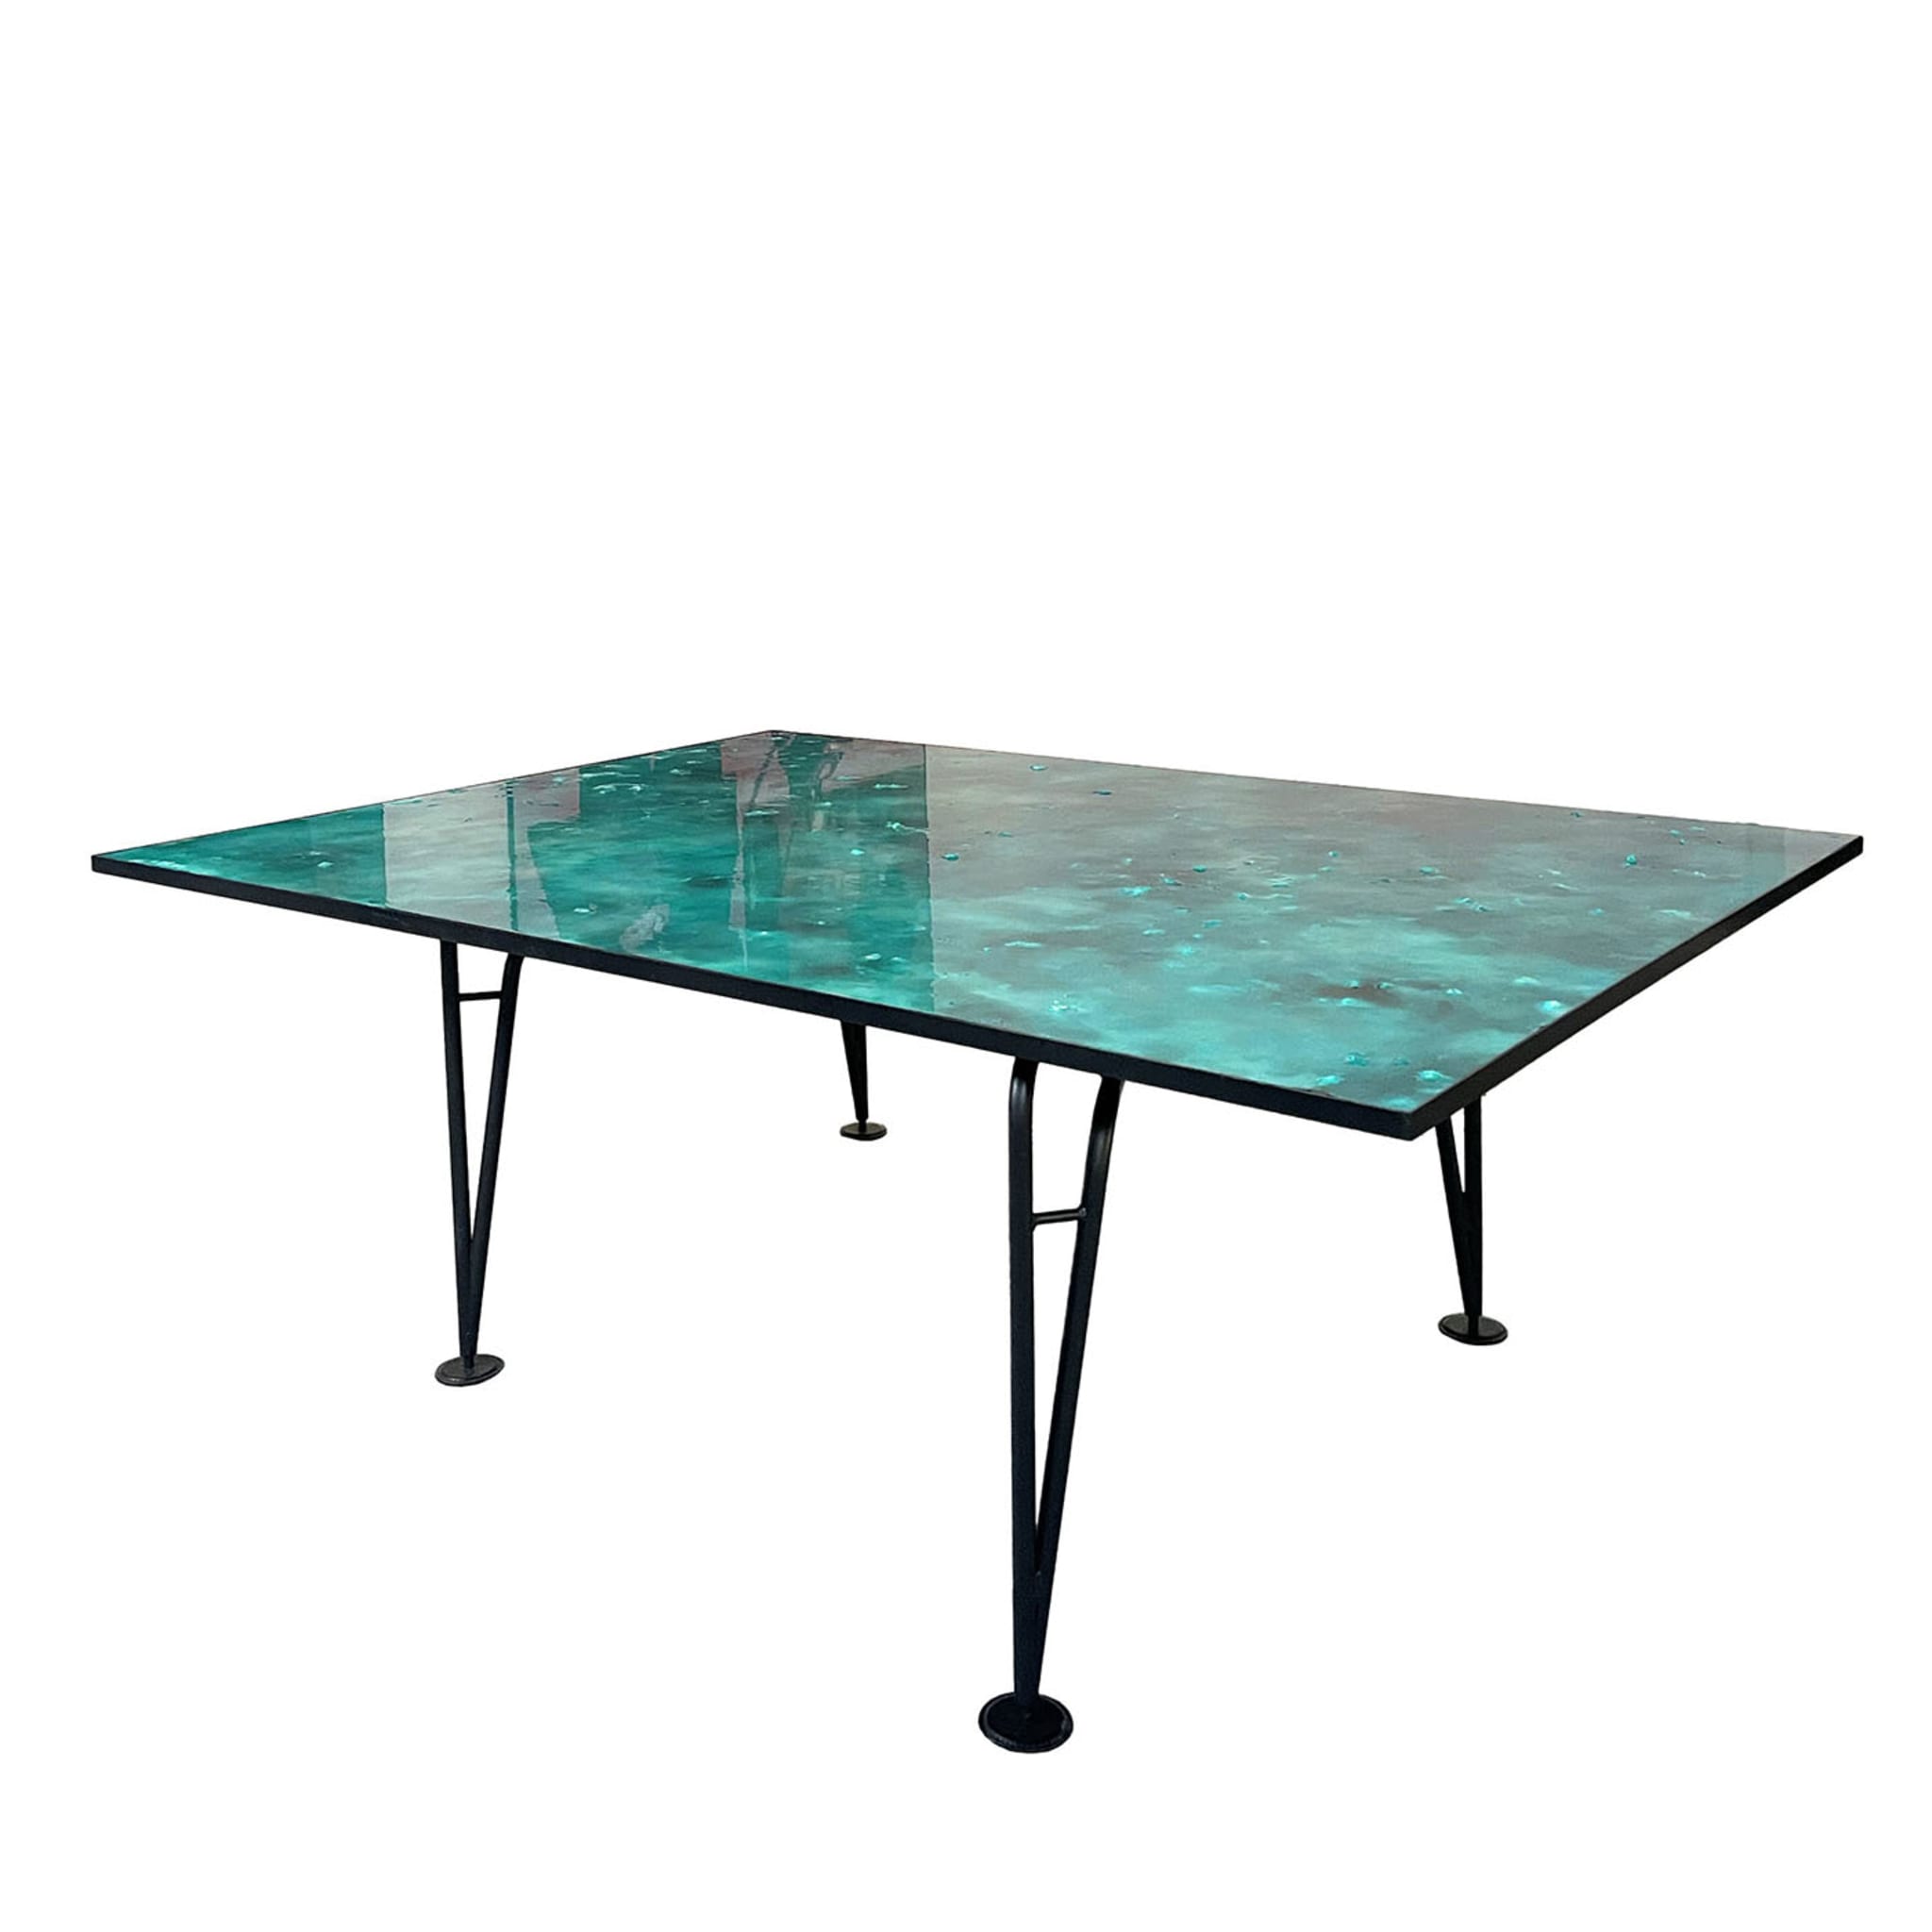 Table asymétrique Green design by Colé Italia, Giannoni&amp;Santoni - Vue principale